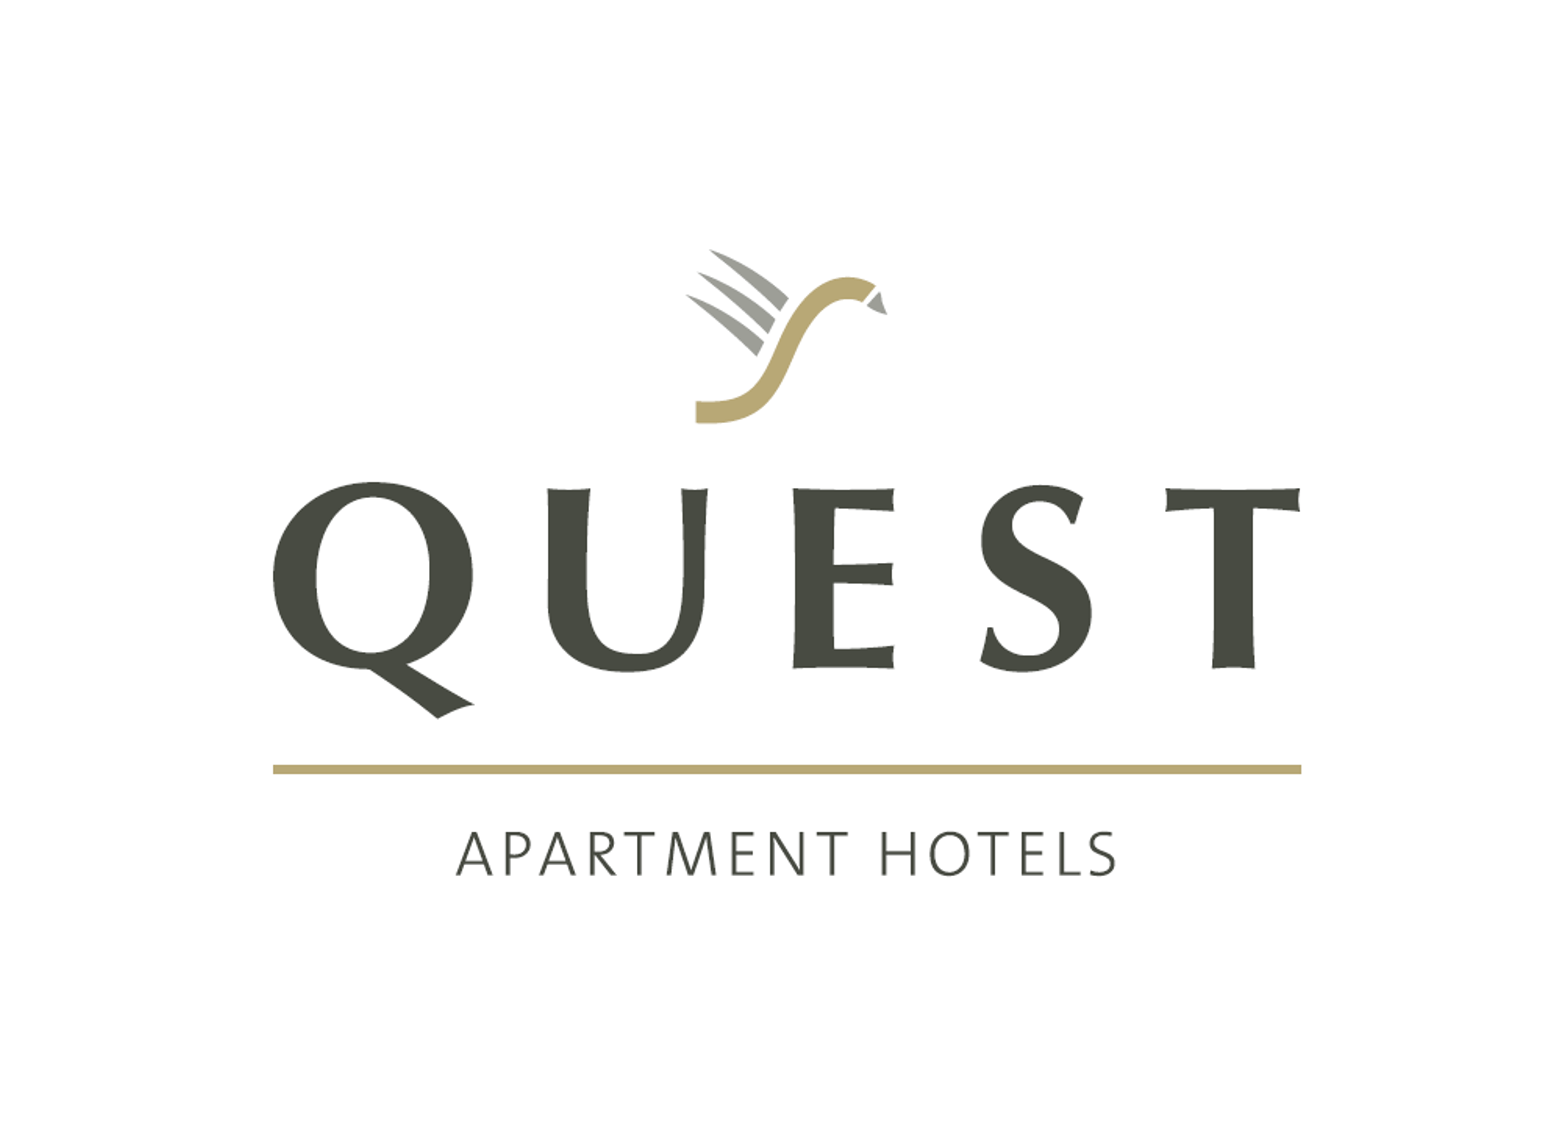 Quest Apartment Hotels Logo